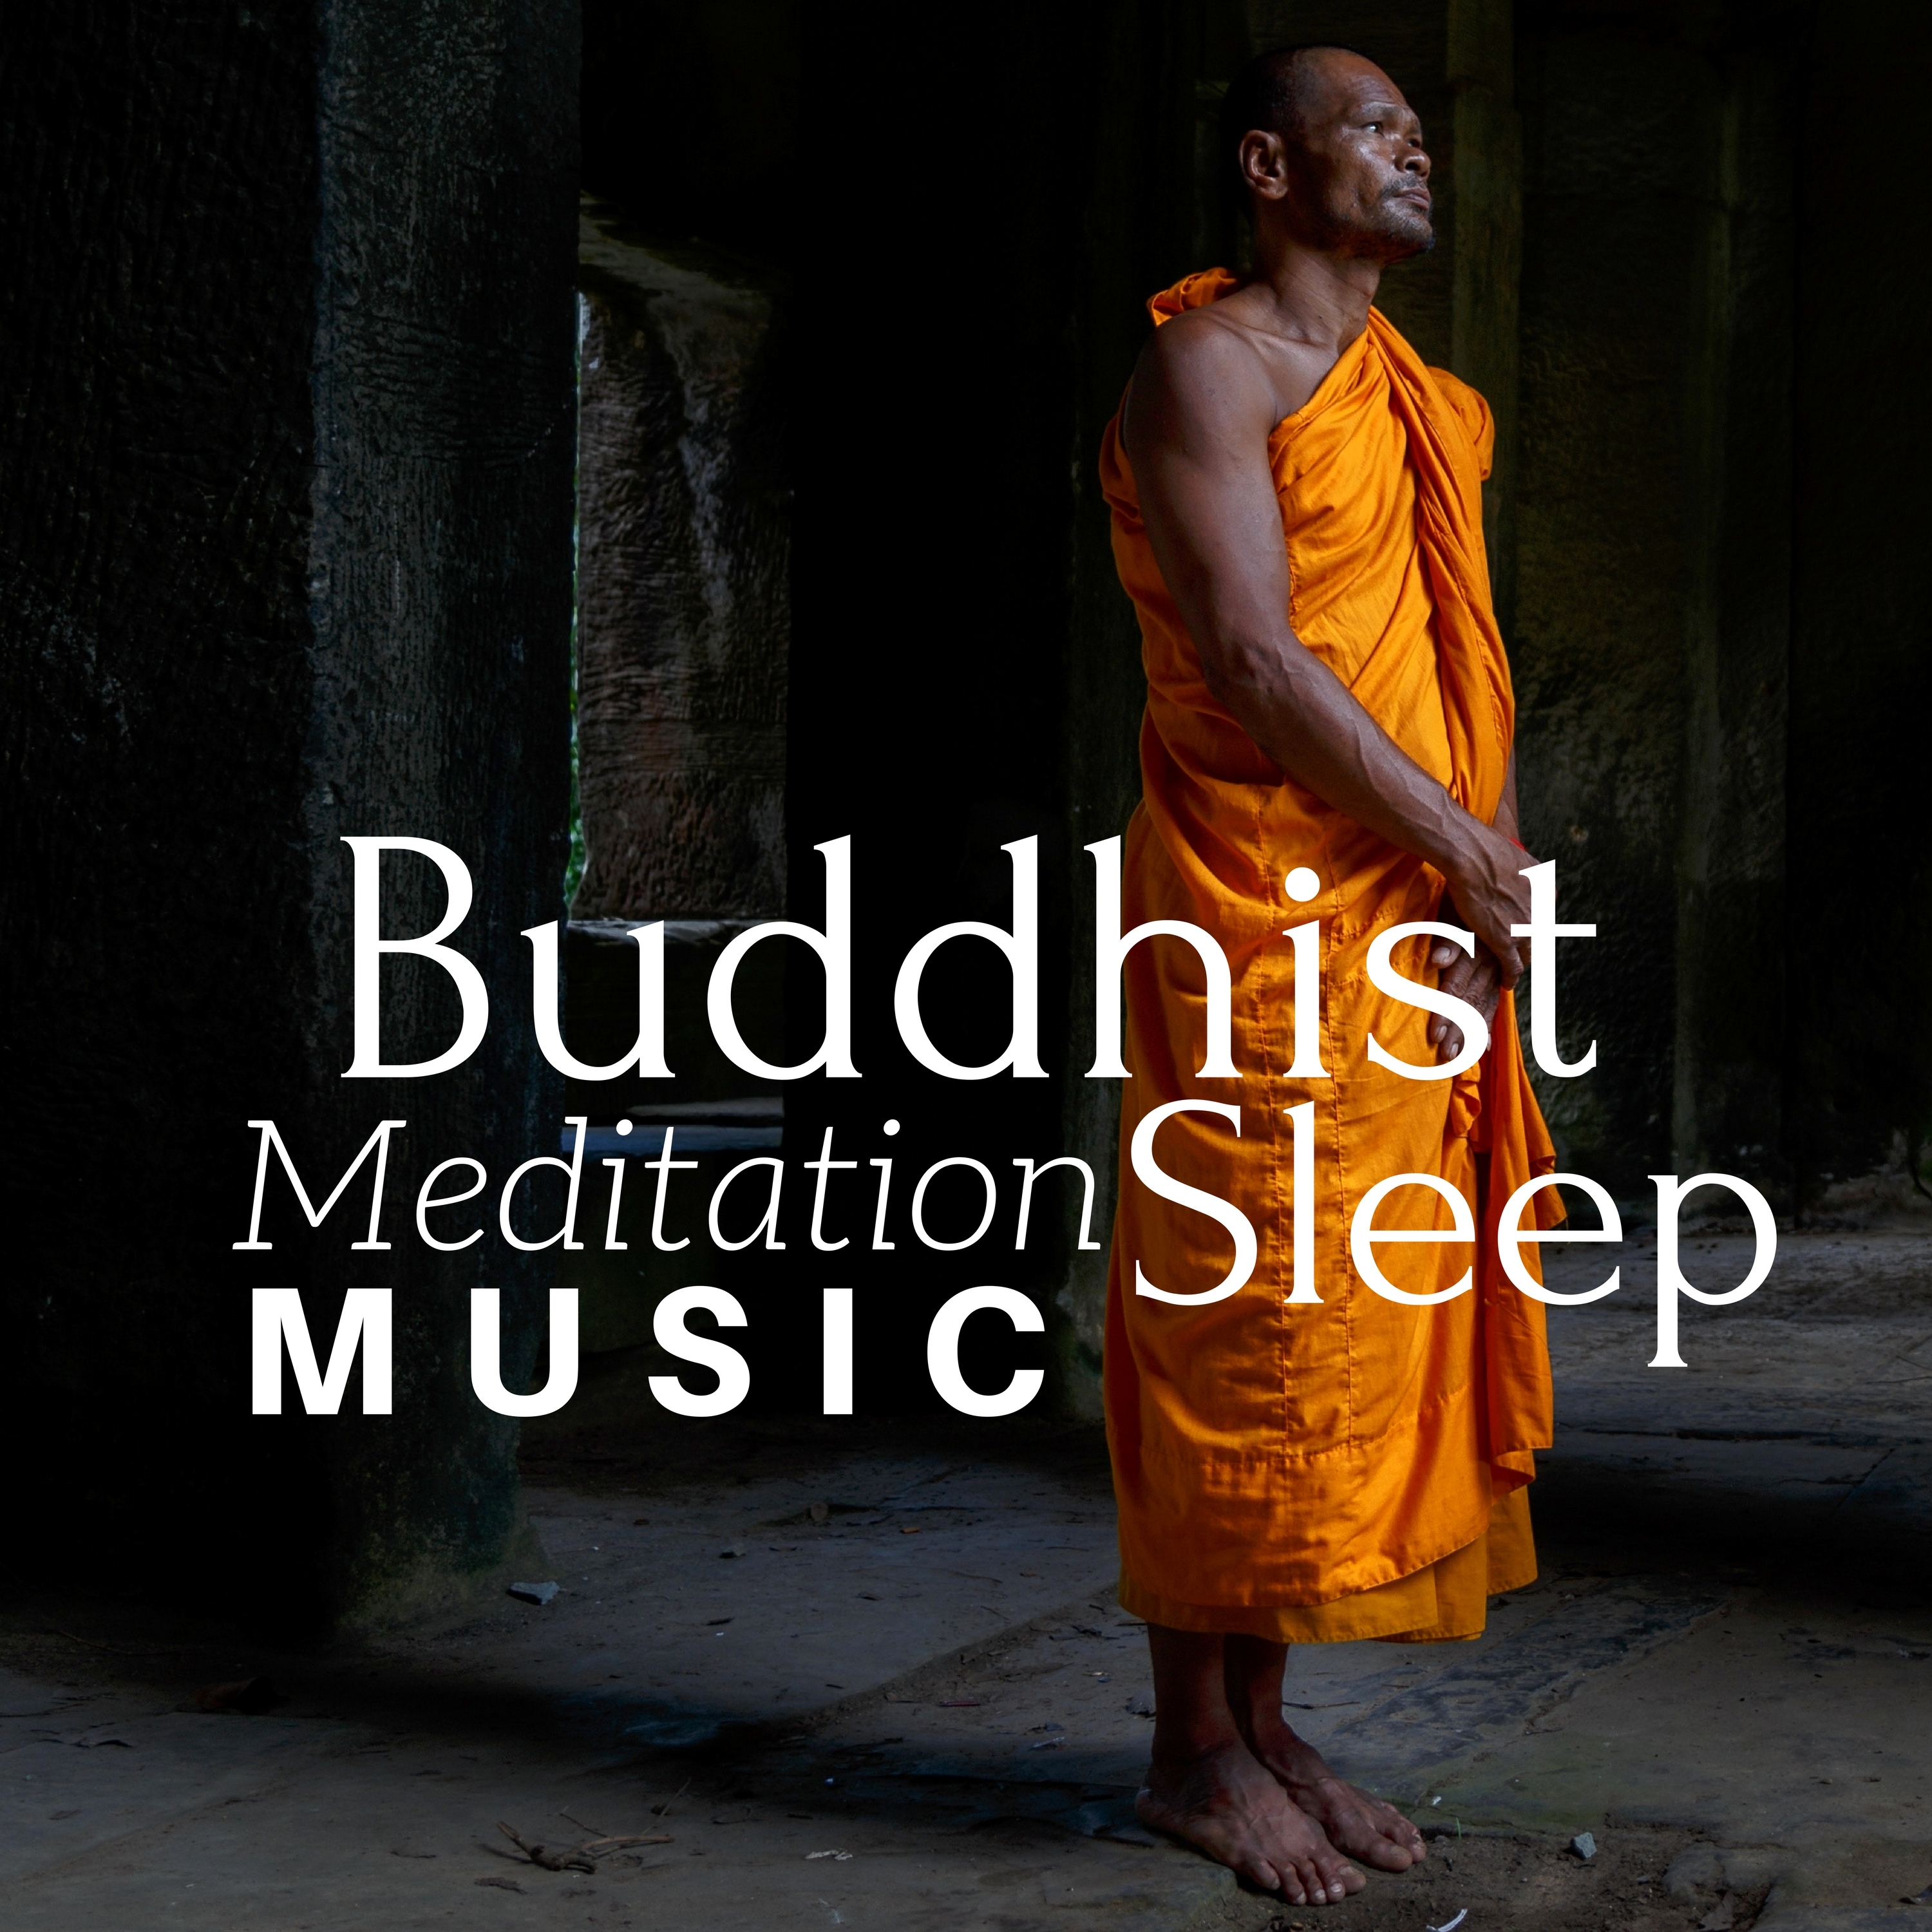 Buddist Meditation Music Sleep